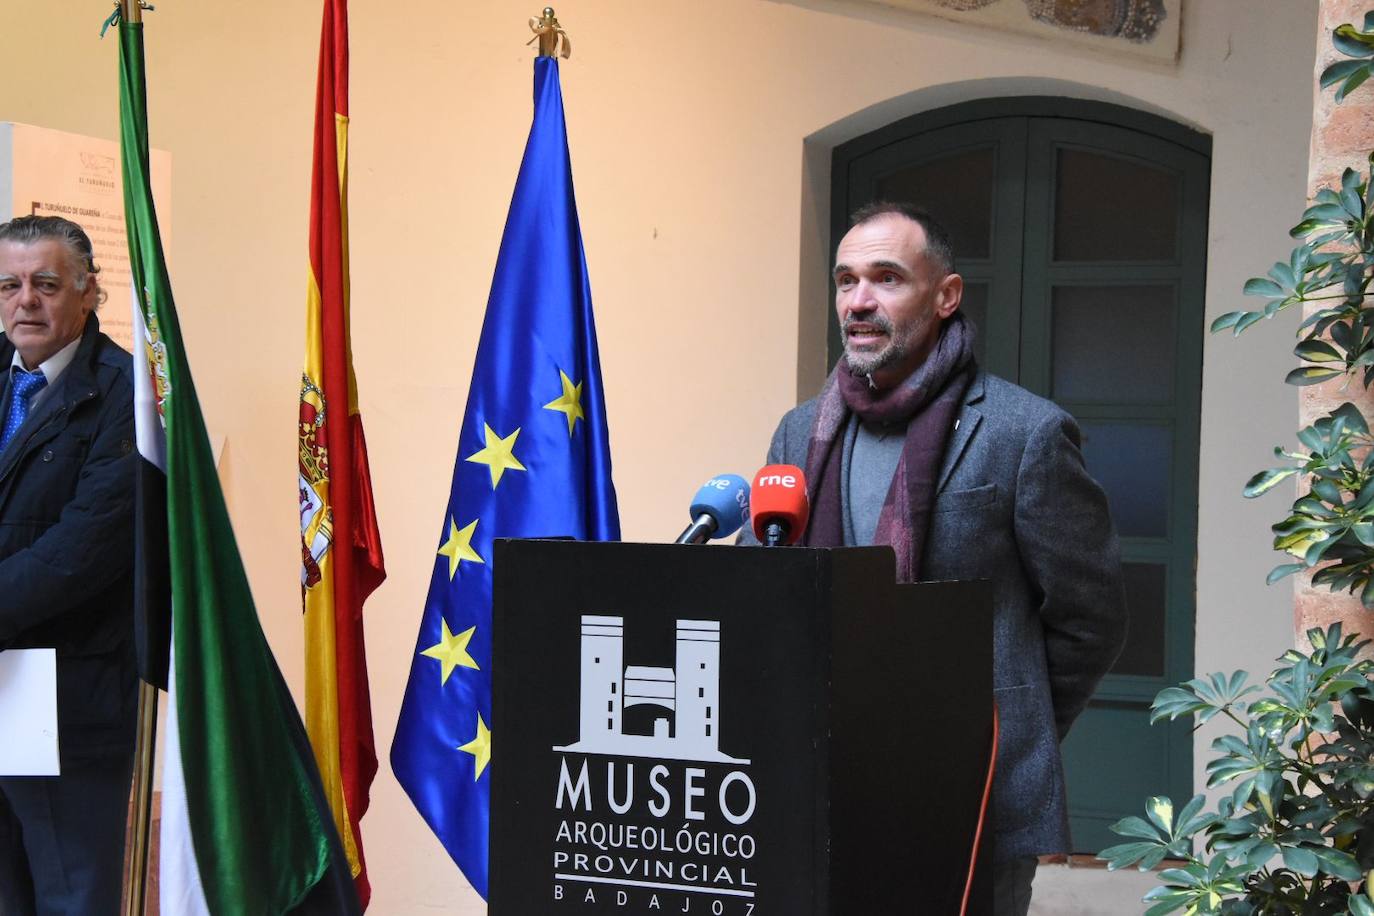 El director del Museo Arqueológico de Badajoz, Francisco J. Heras, condujo el acto inaugural.